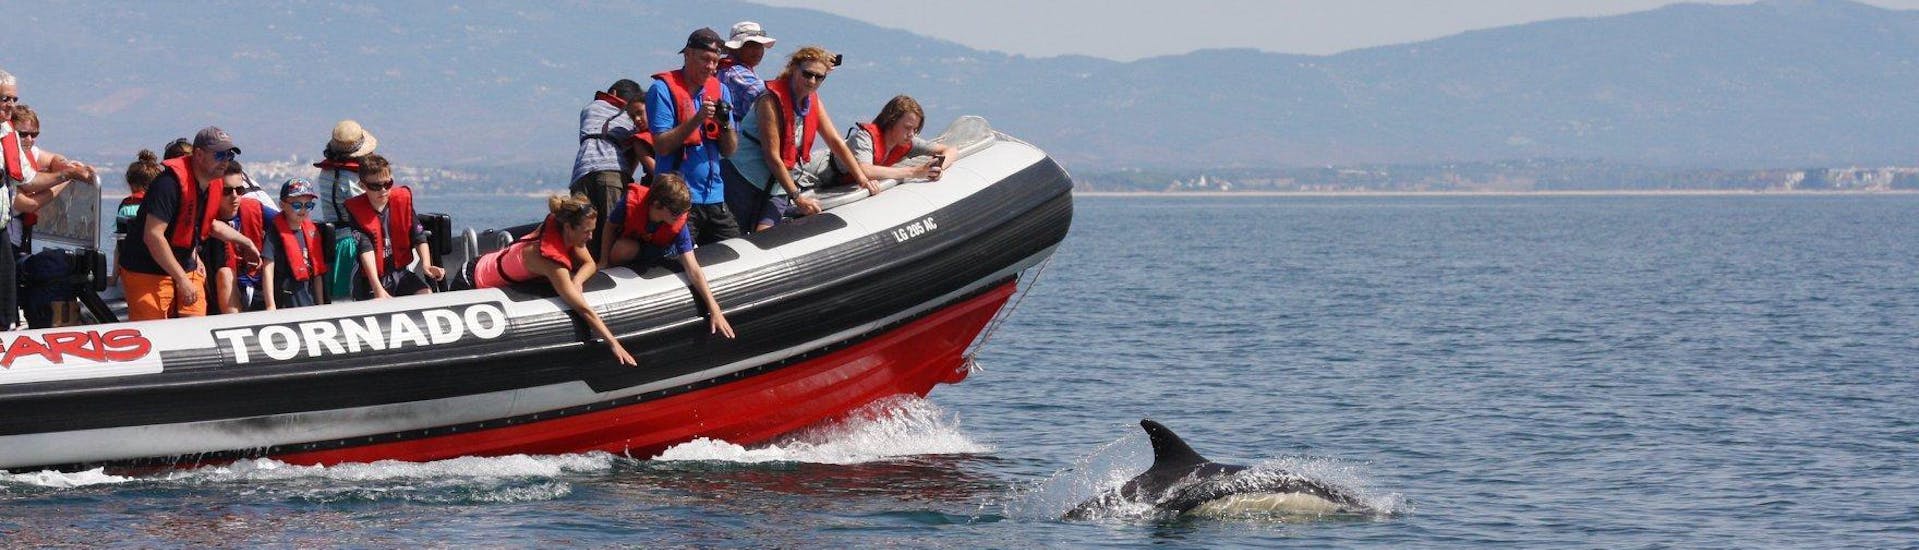 Tijdens een boottocht om dolfijnen te spotten in Portimao met Seafaris Algarve, bewonderen bezoekers de vriendelijke dieren vanaf de boot.